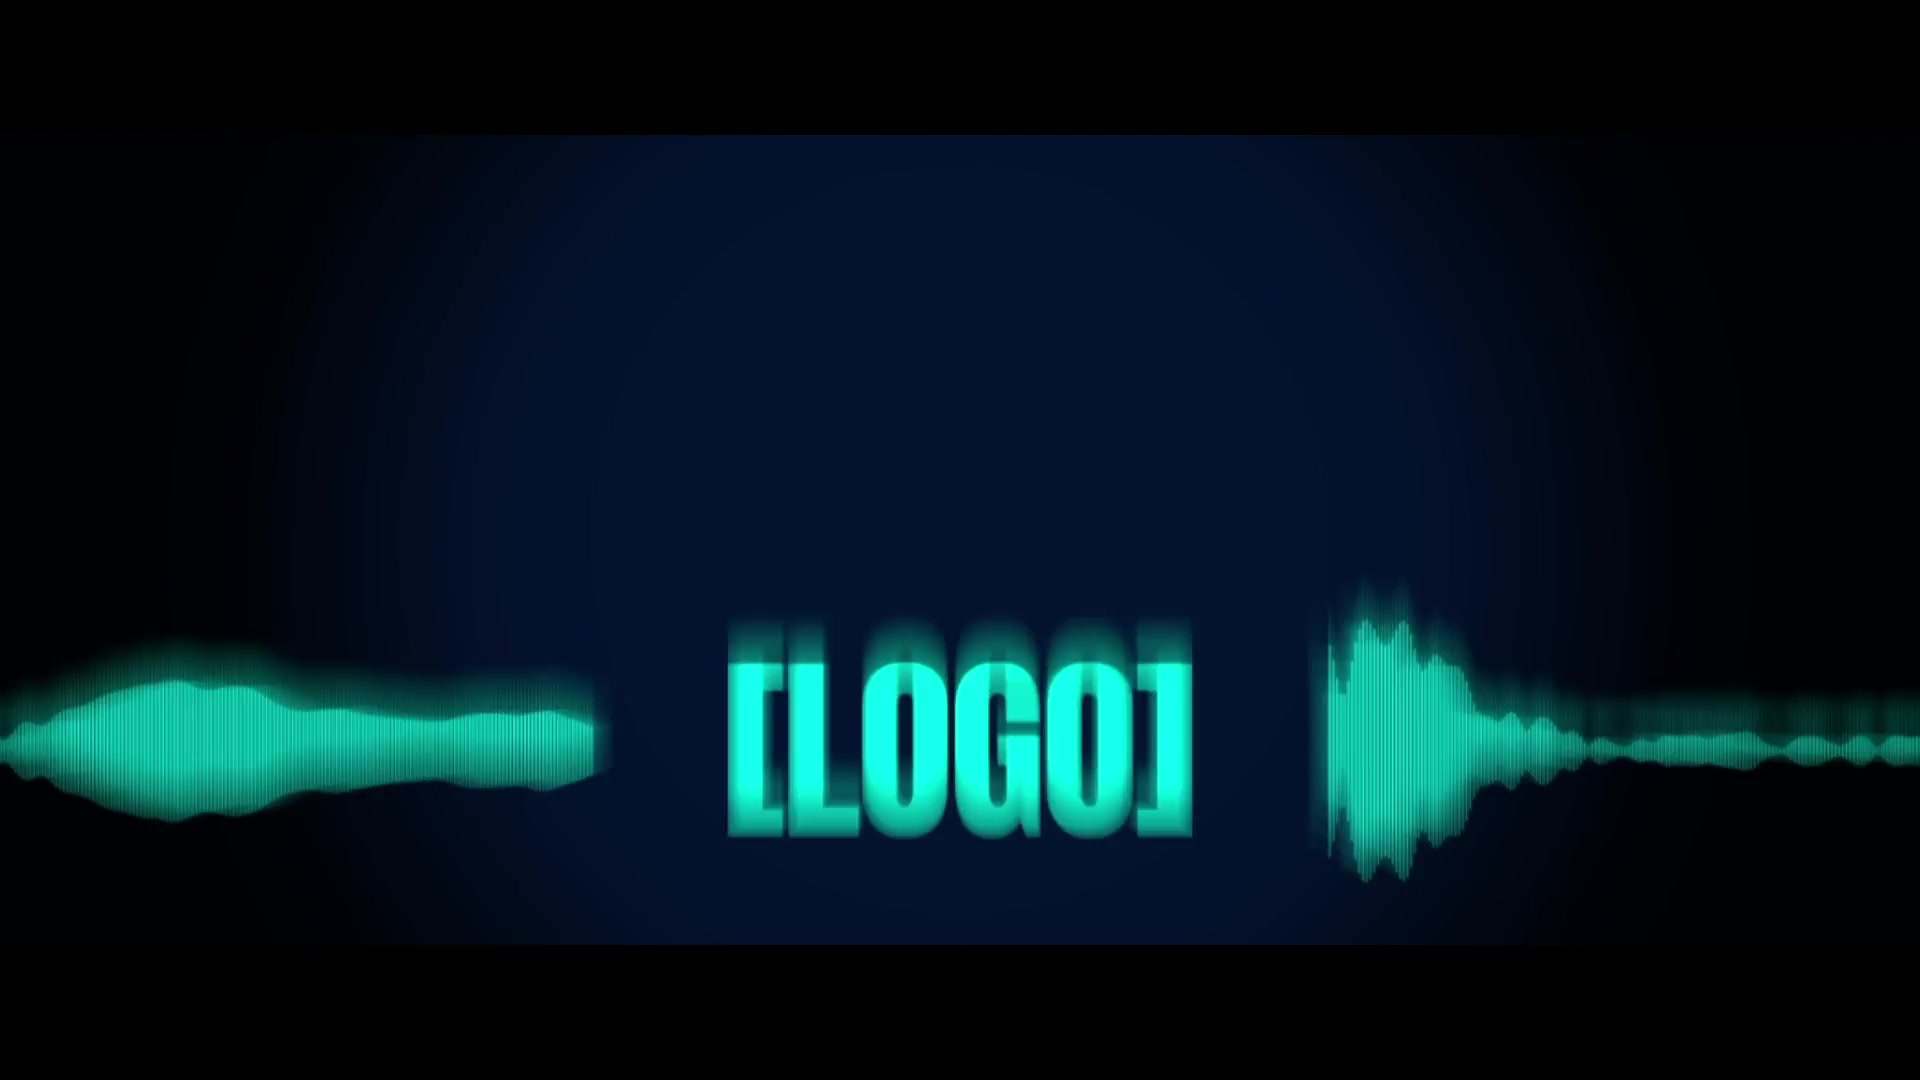 Sound Glitch Logo Reveal Videohive 21950743 Premiere Pro Image 3